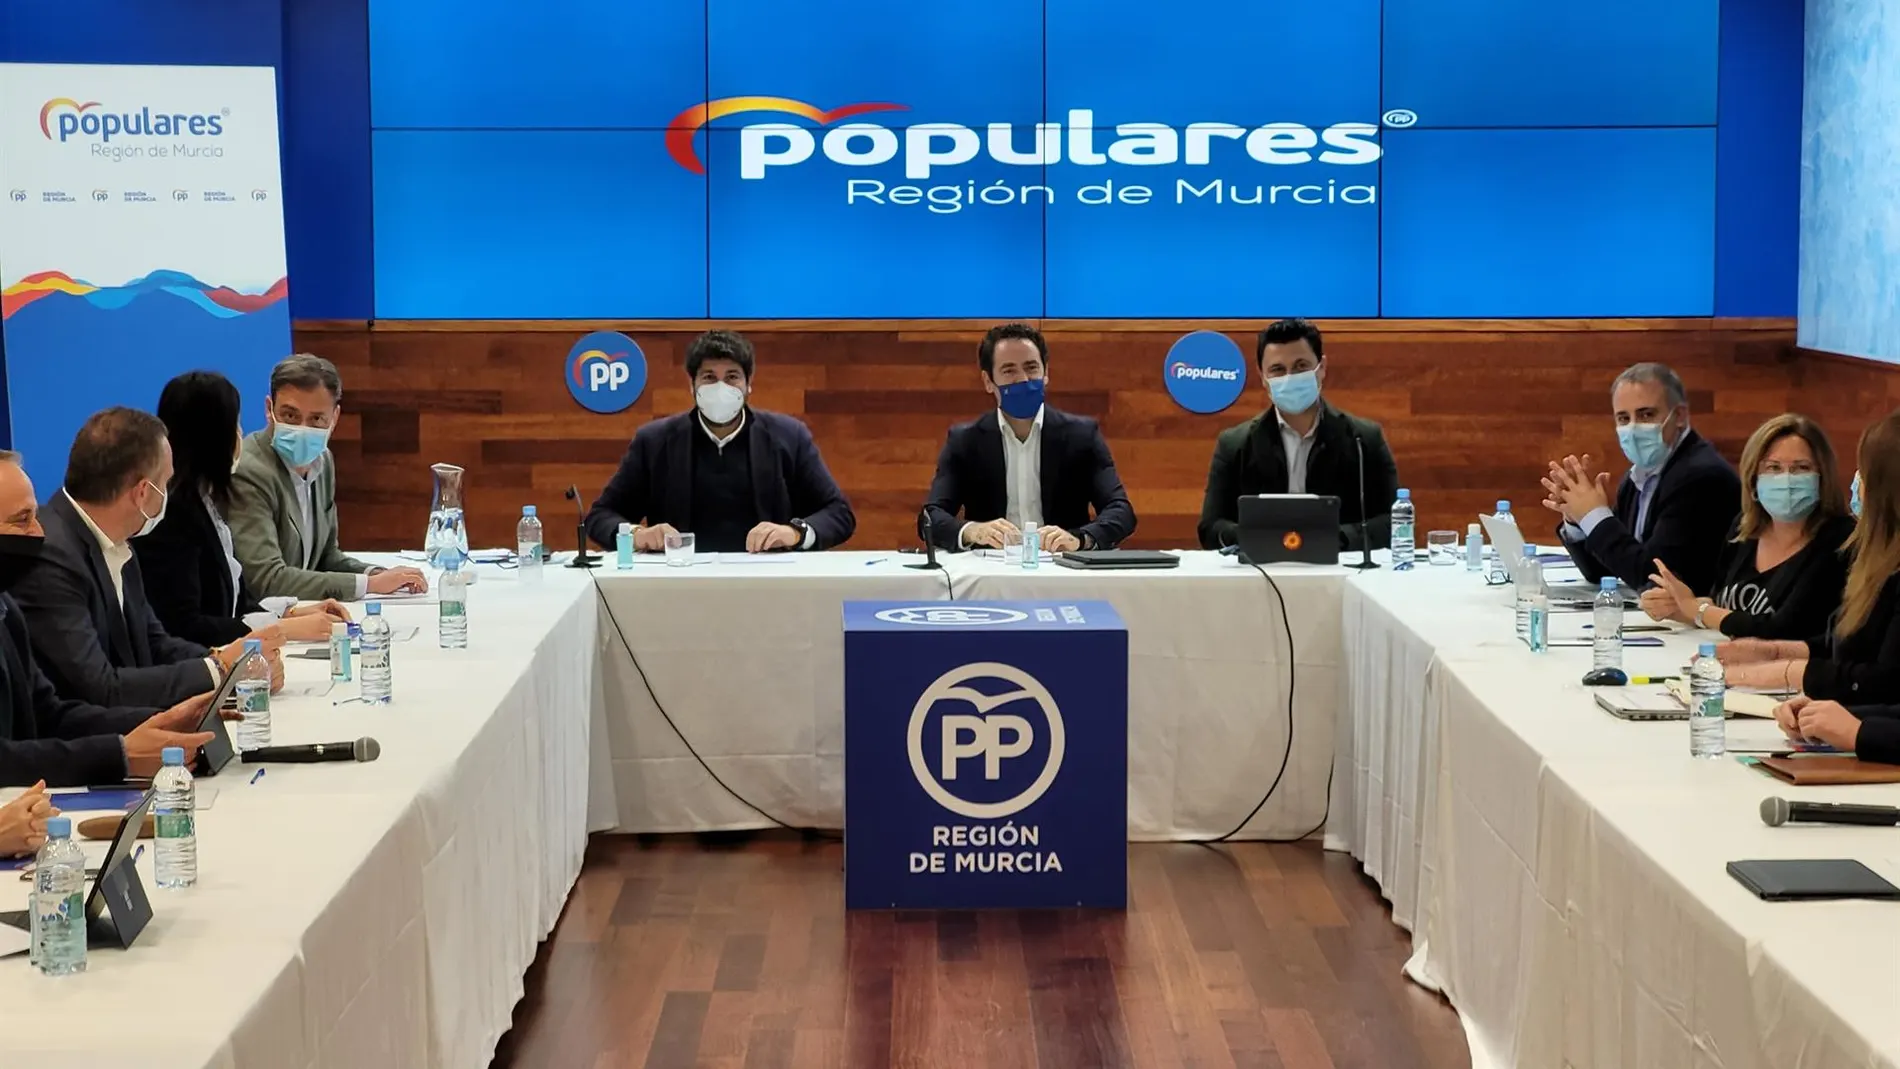 Reunión de trabajo del PP murciano bajo la presidencia del secretario general del PP, Teodoro García